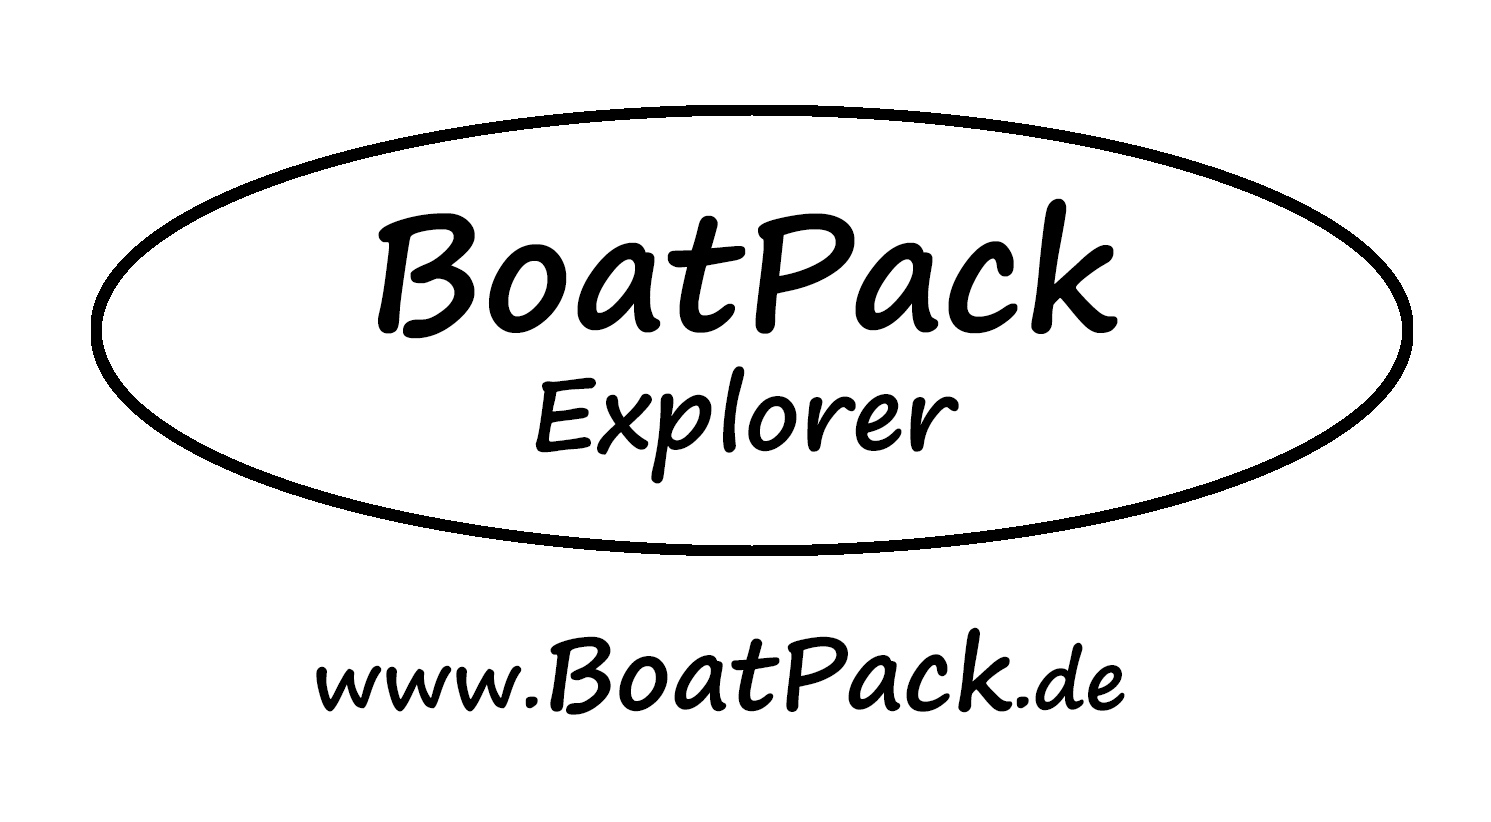 BoatPack